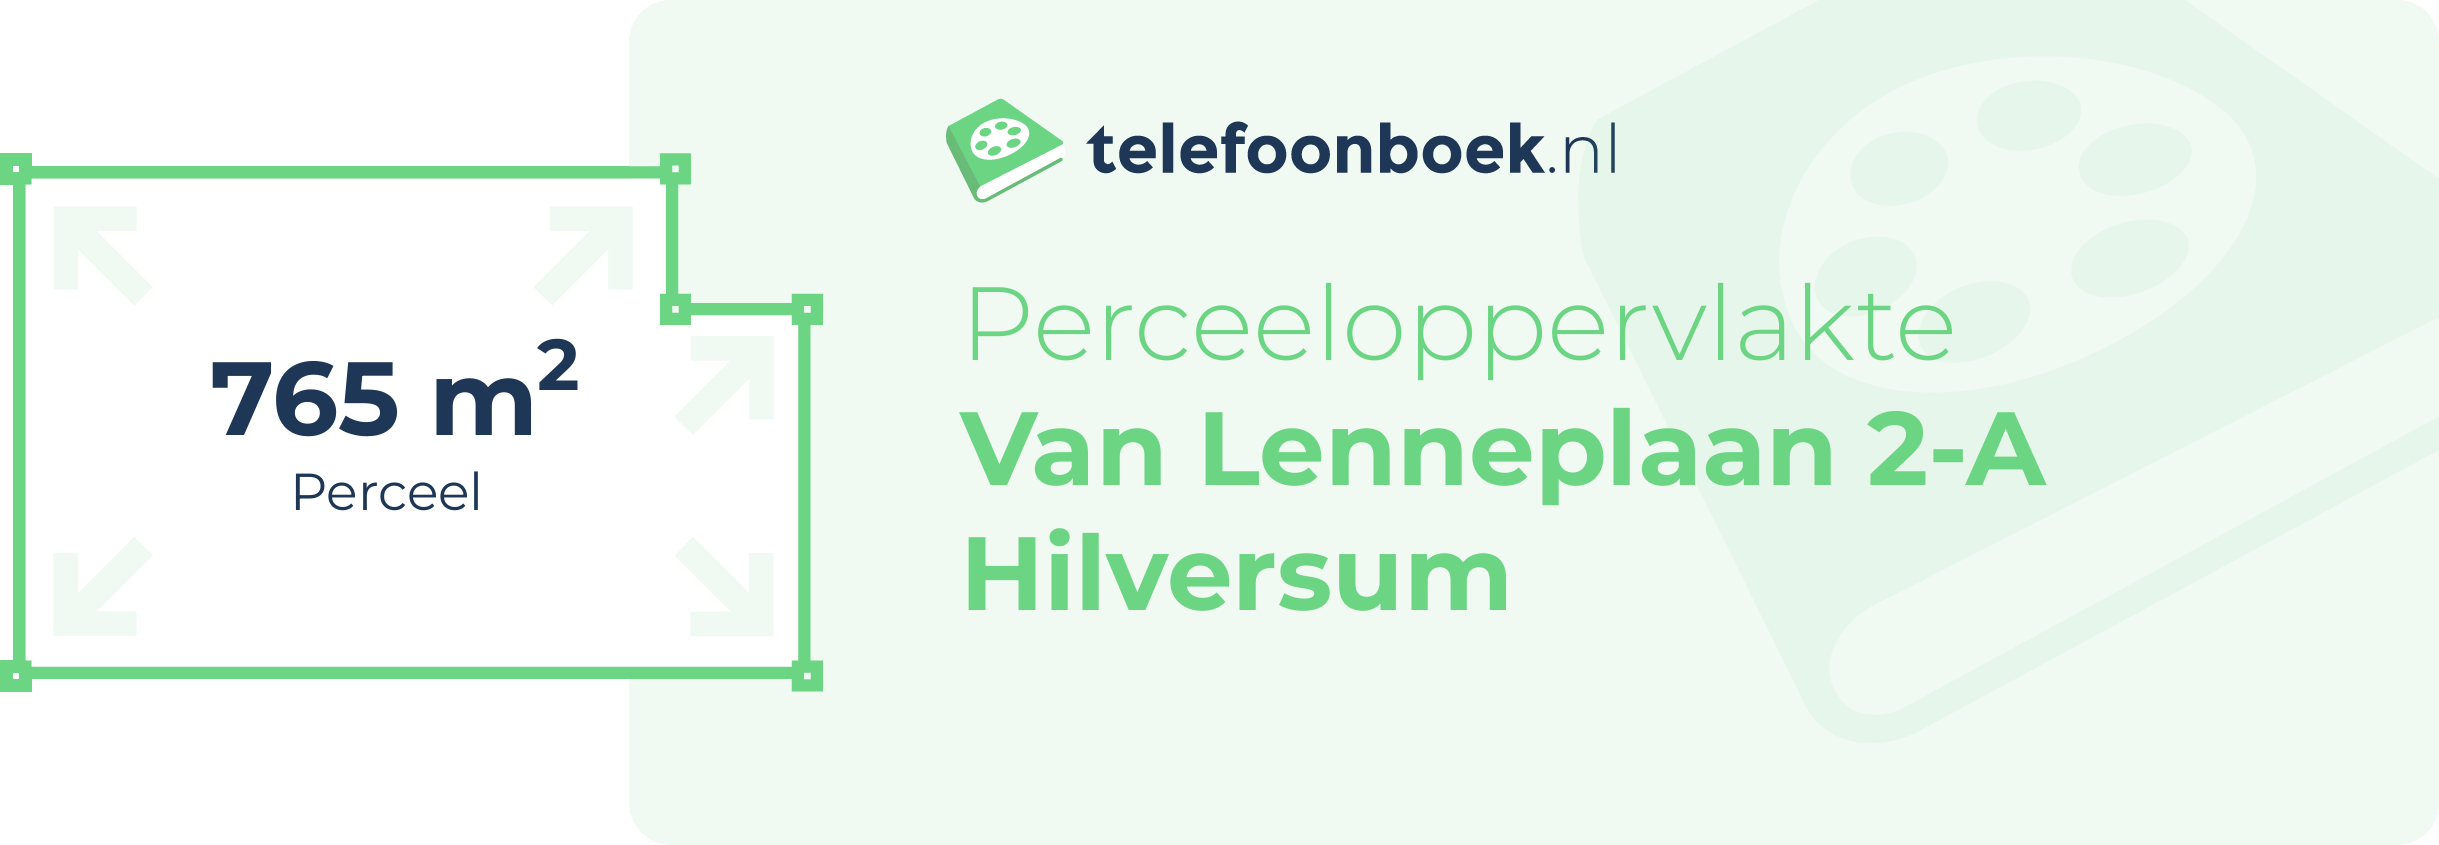 Perceeloppervlakte Van Lenneplaan 2-A Hilversum